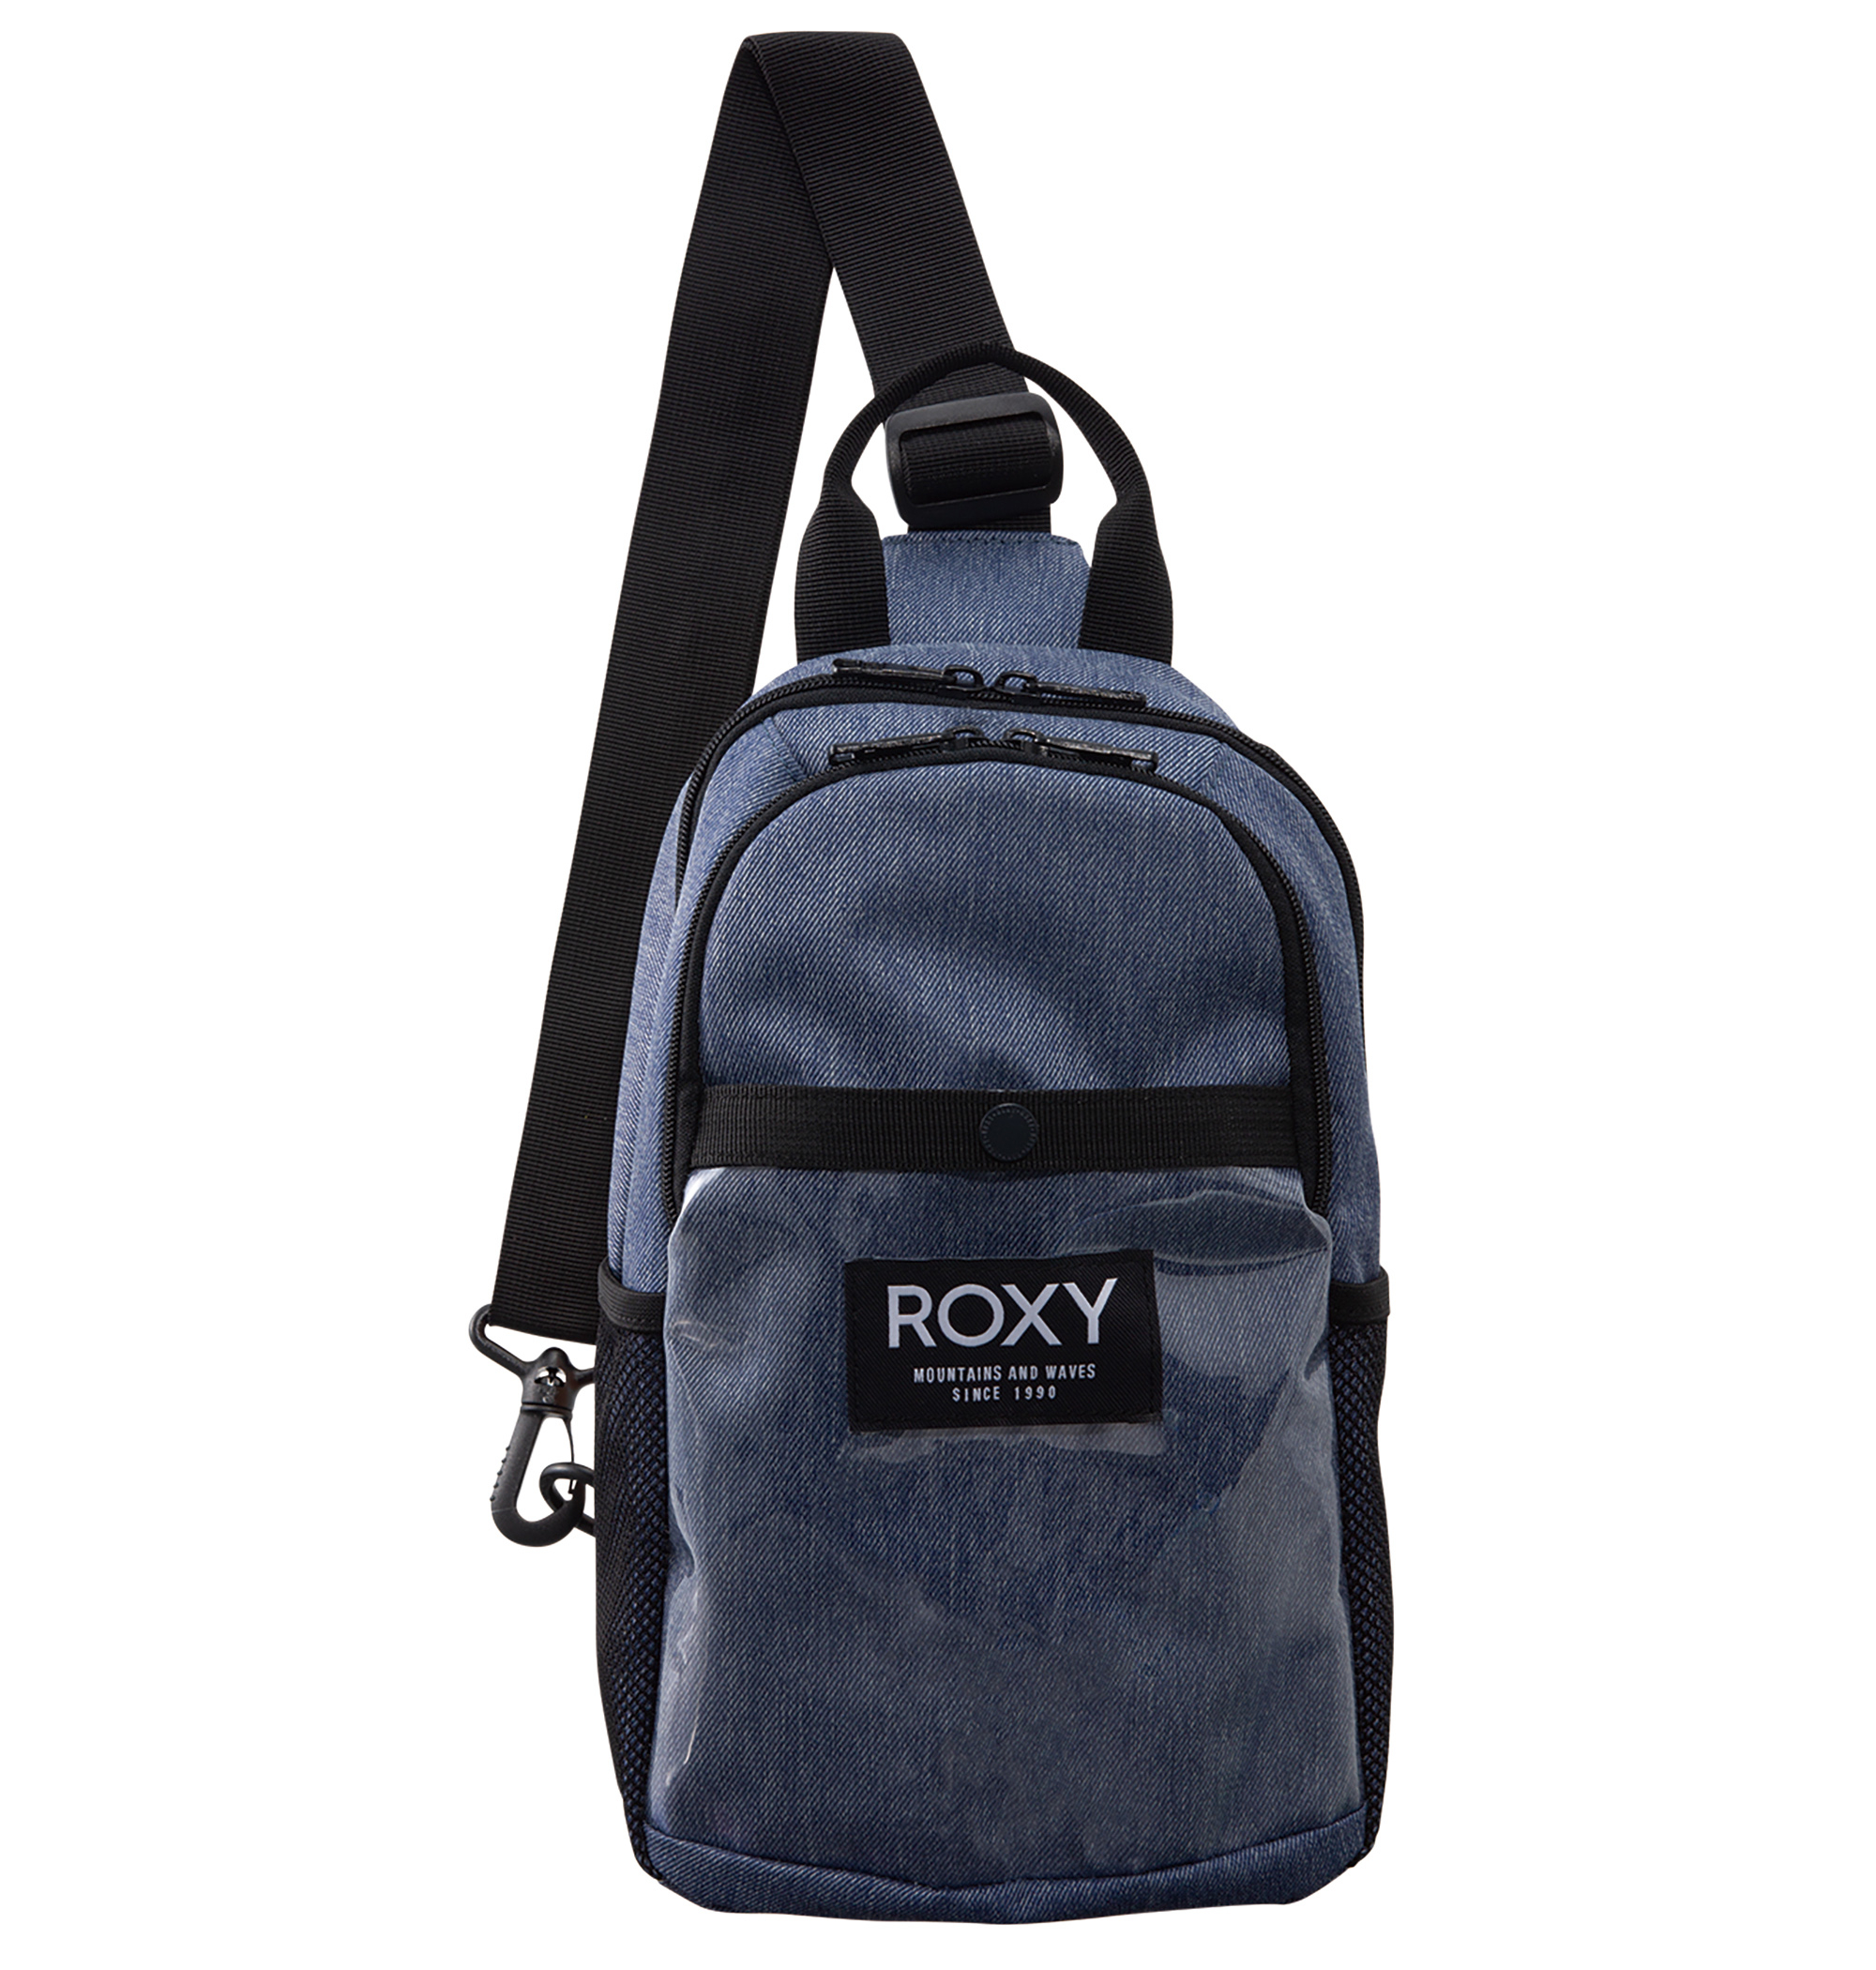 ＜Roxy＞BUTTER UP コンパクトなサイズながらマチやポケットがあり、安心感のある収納力が魅力的な斜めがけバッグ